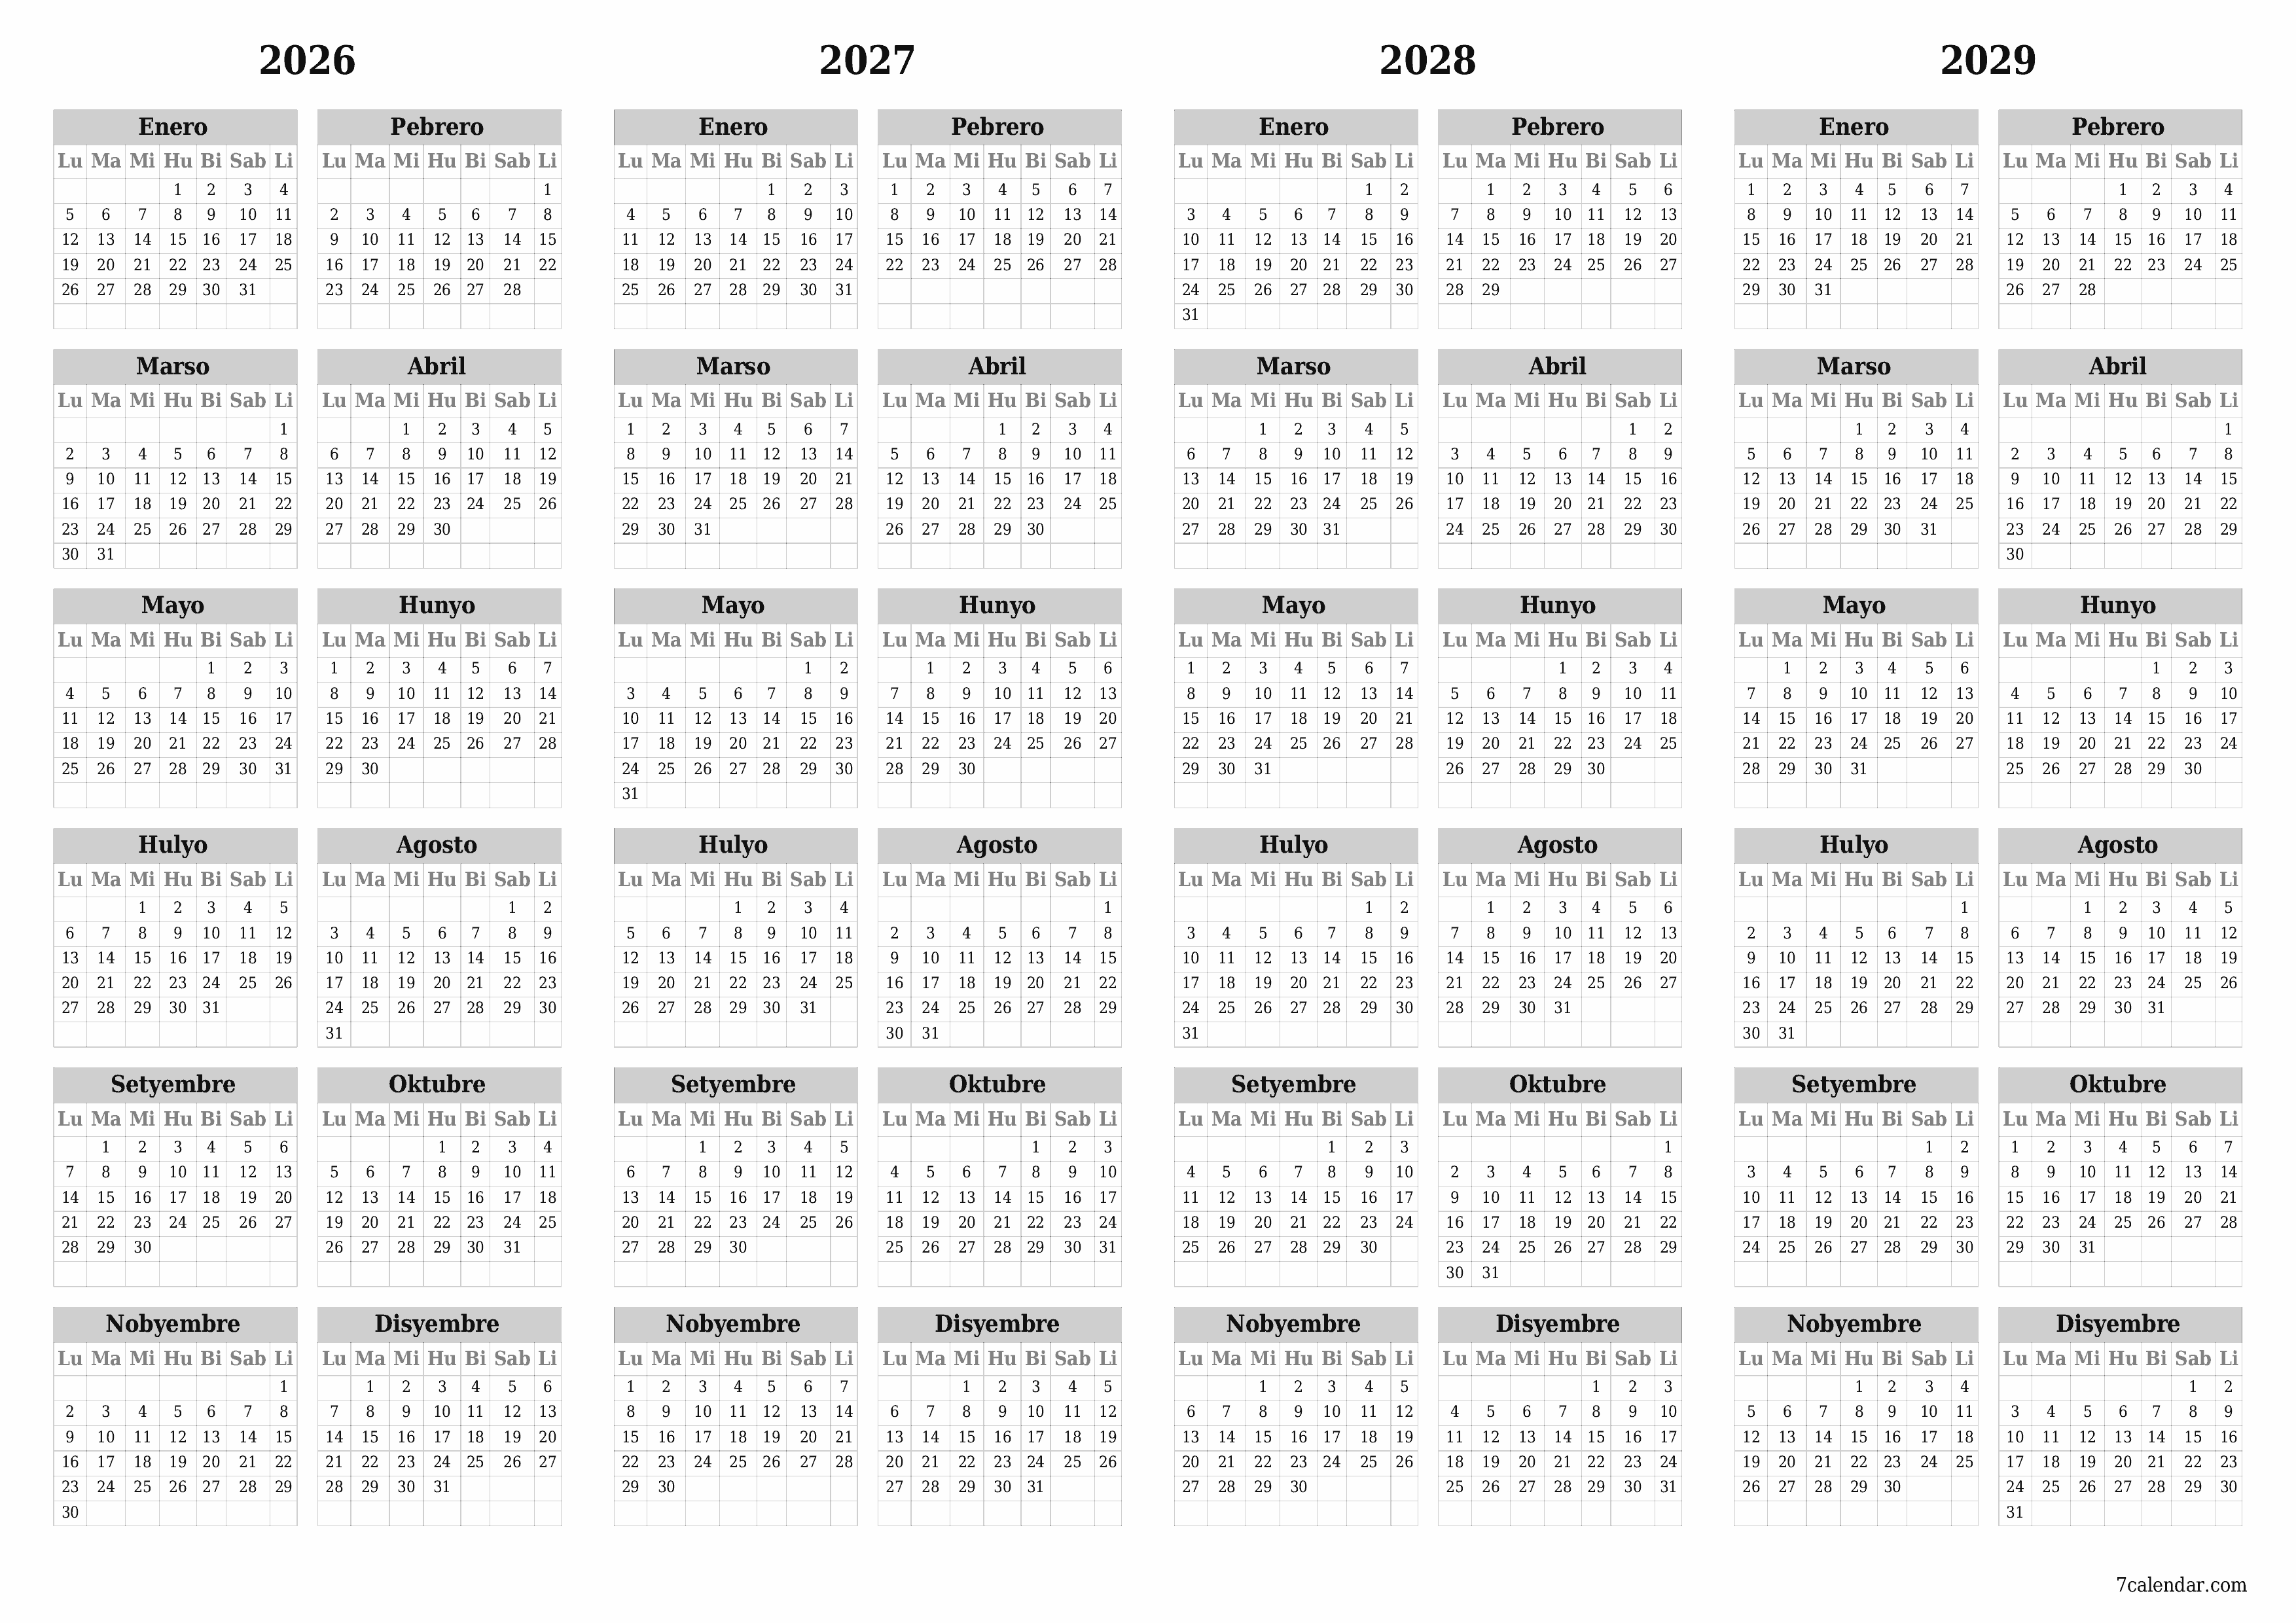 napi-print na sa dingding template ng libreng pahalang Taunan kalendaryo Hunyo (Hun) 2026